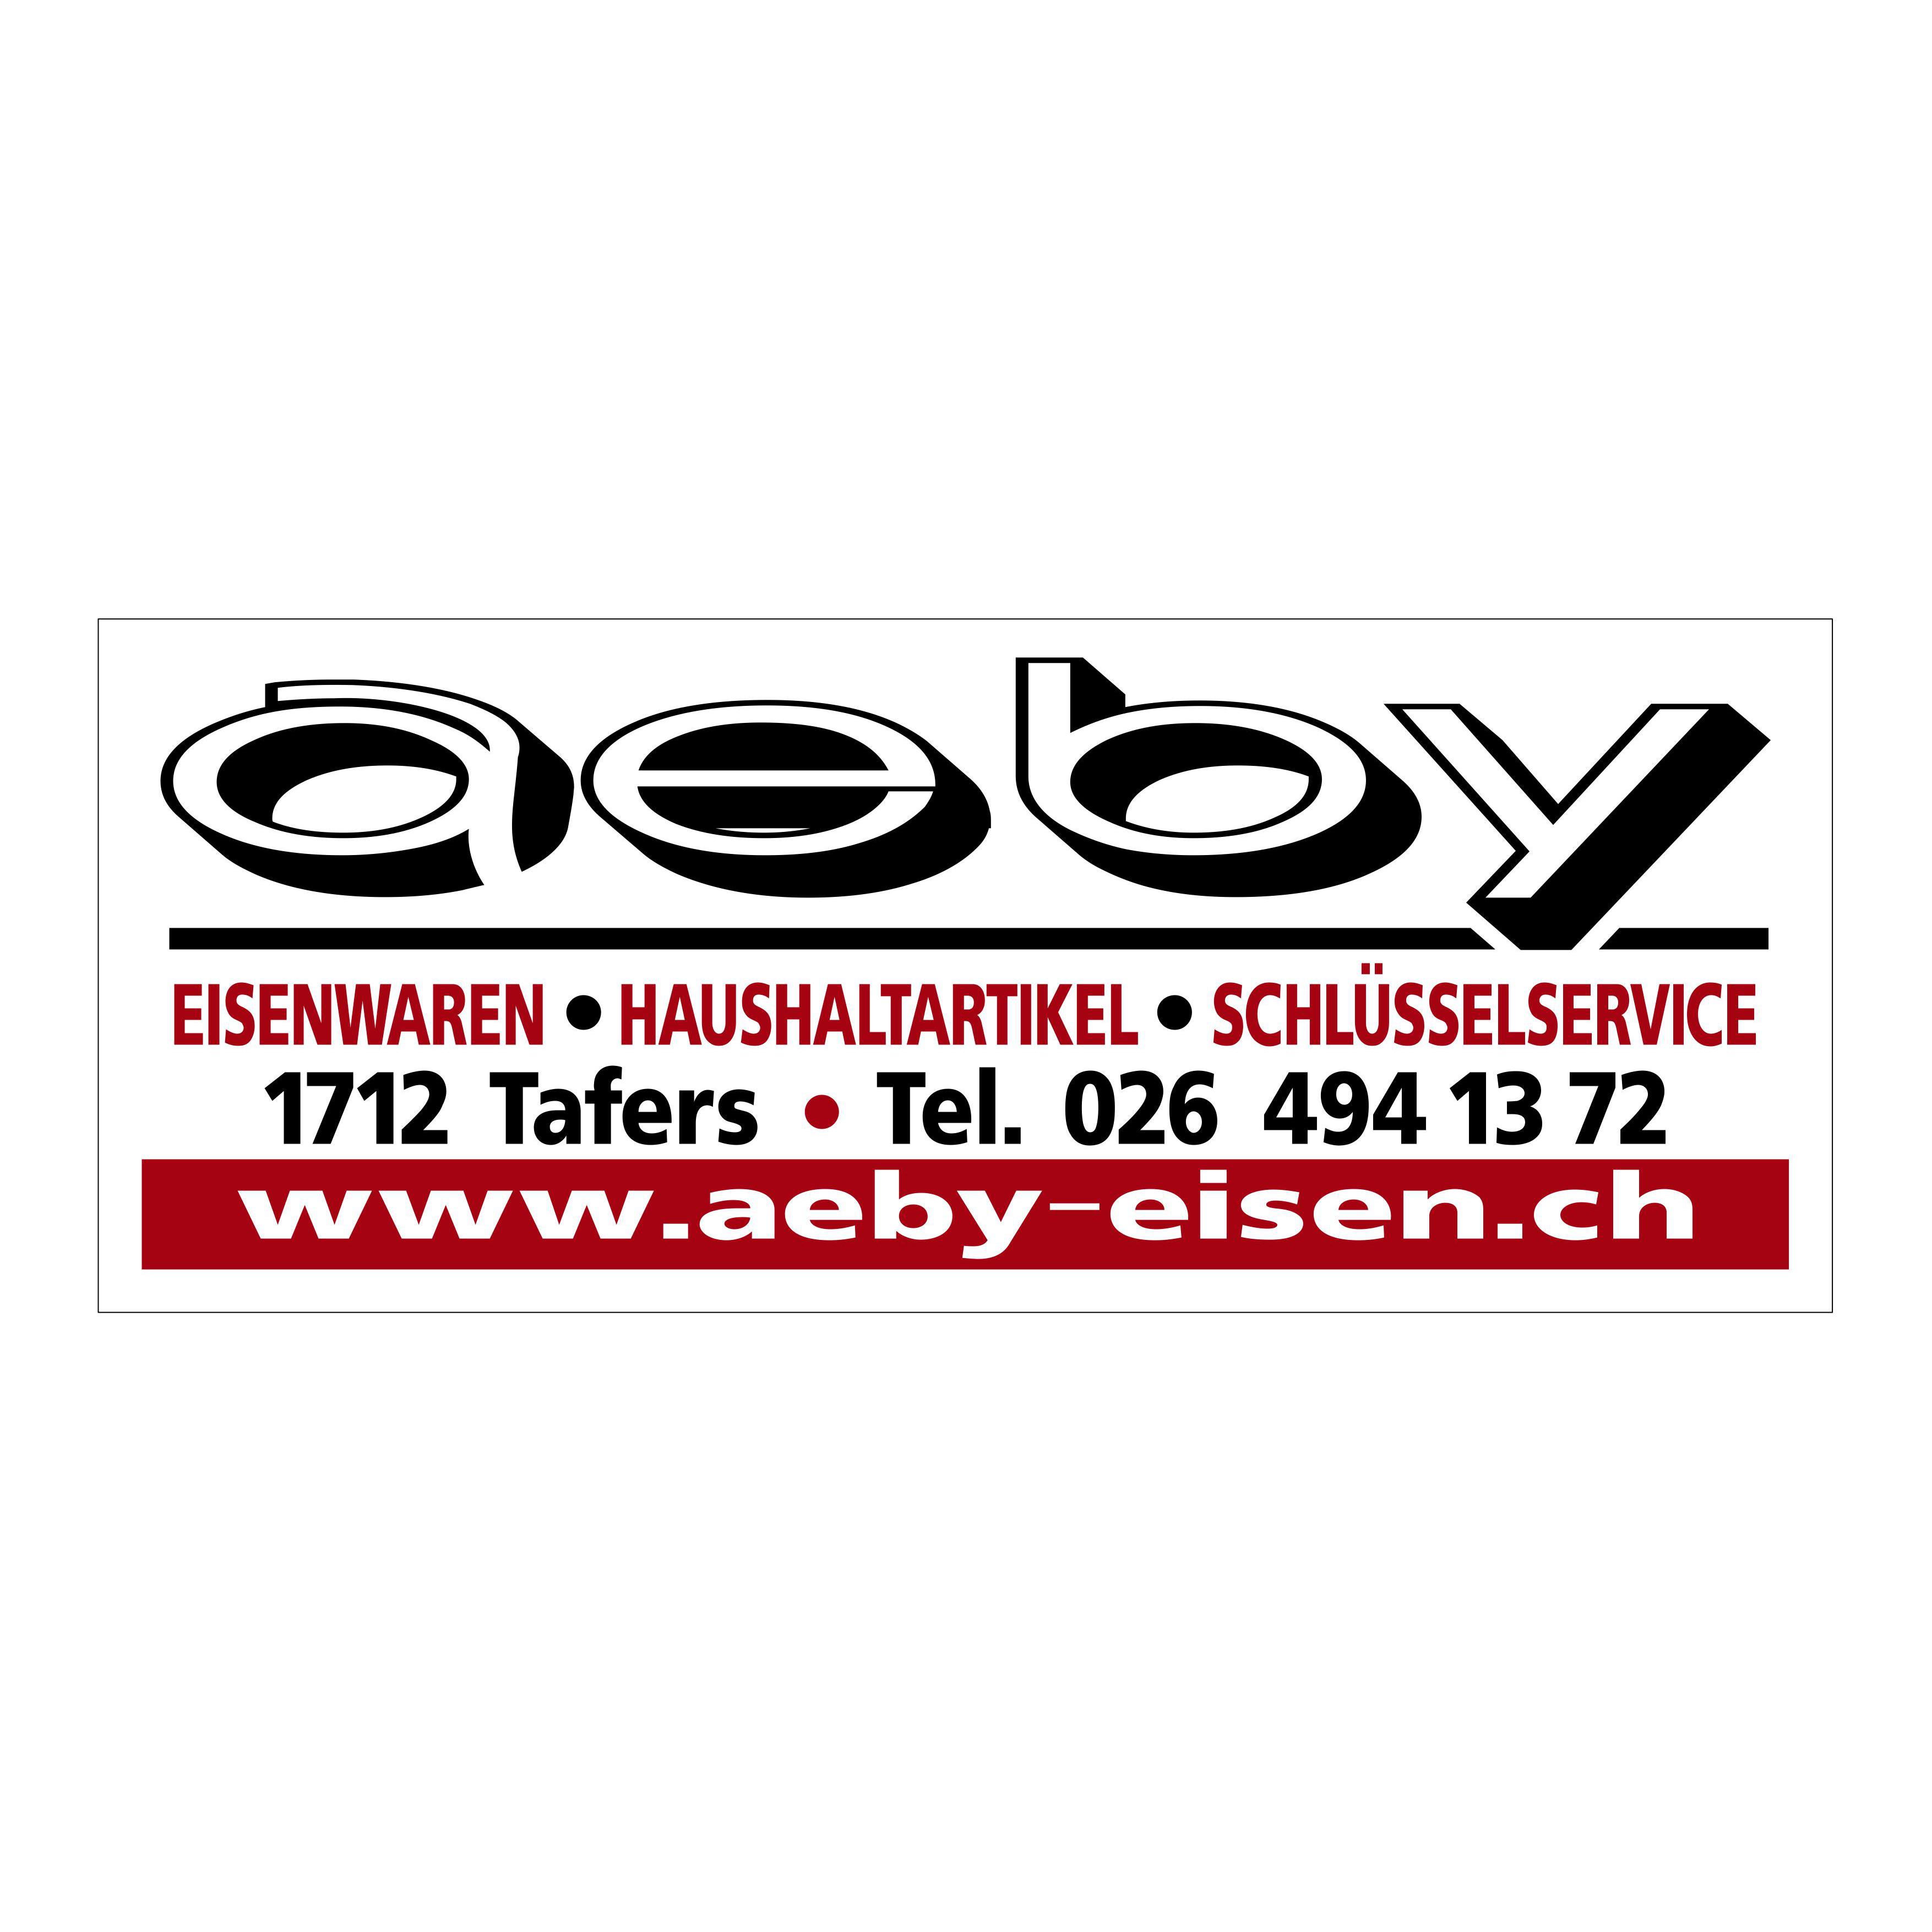 Aeby Eisenhandlung Logo